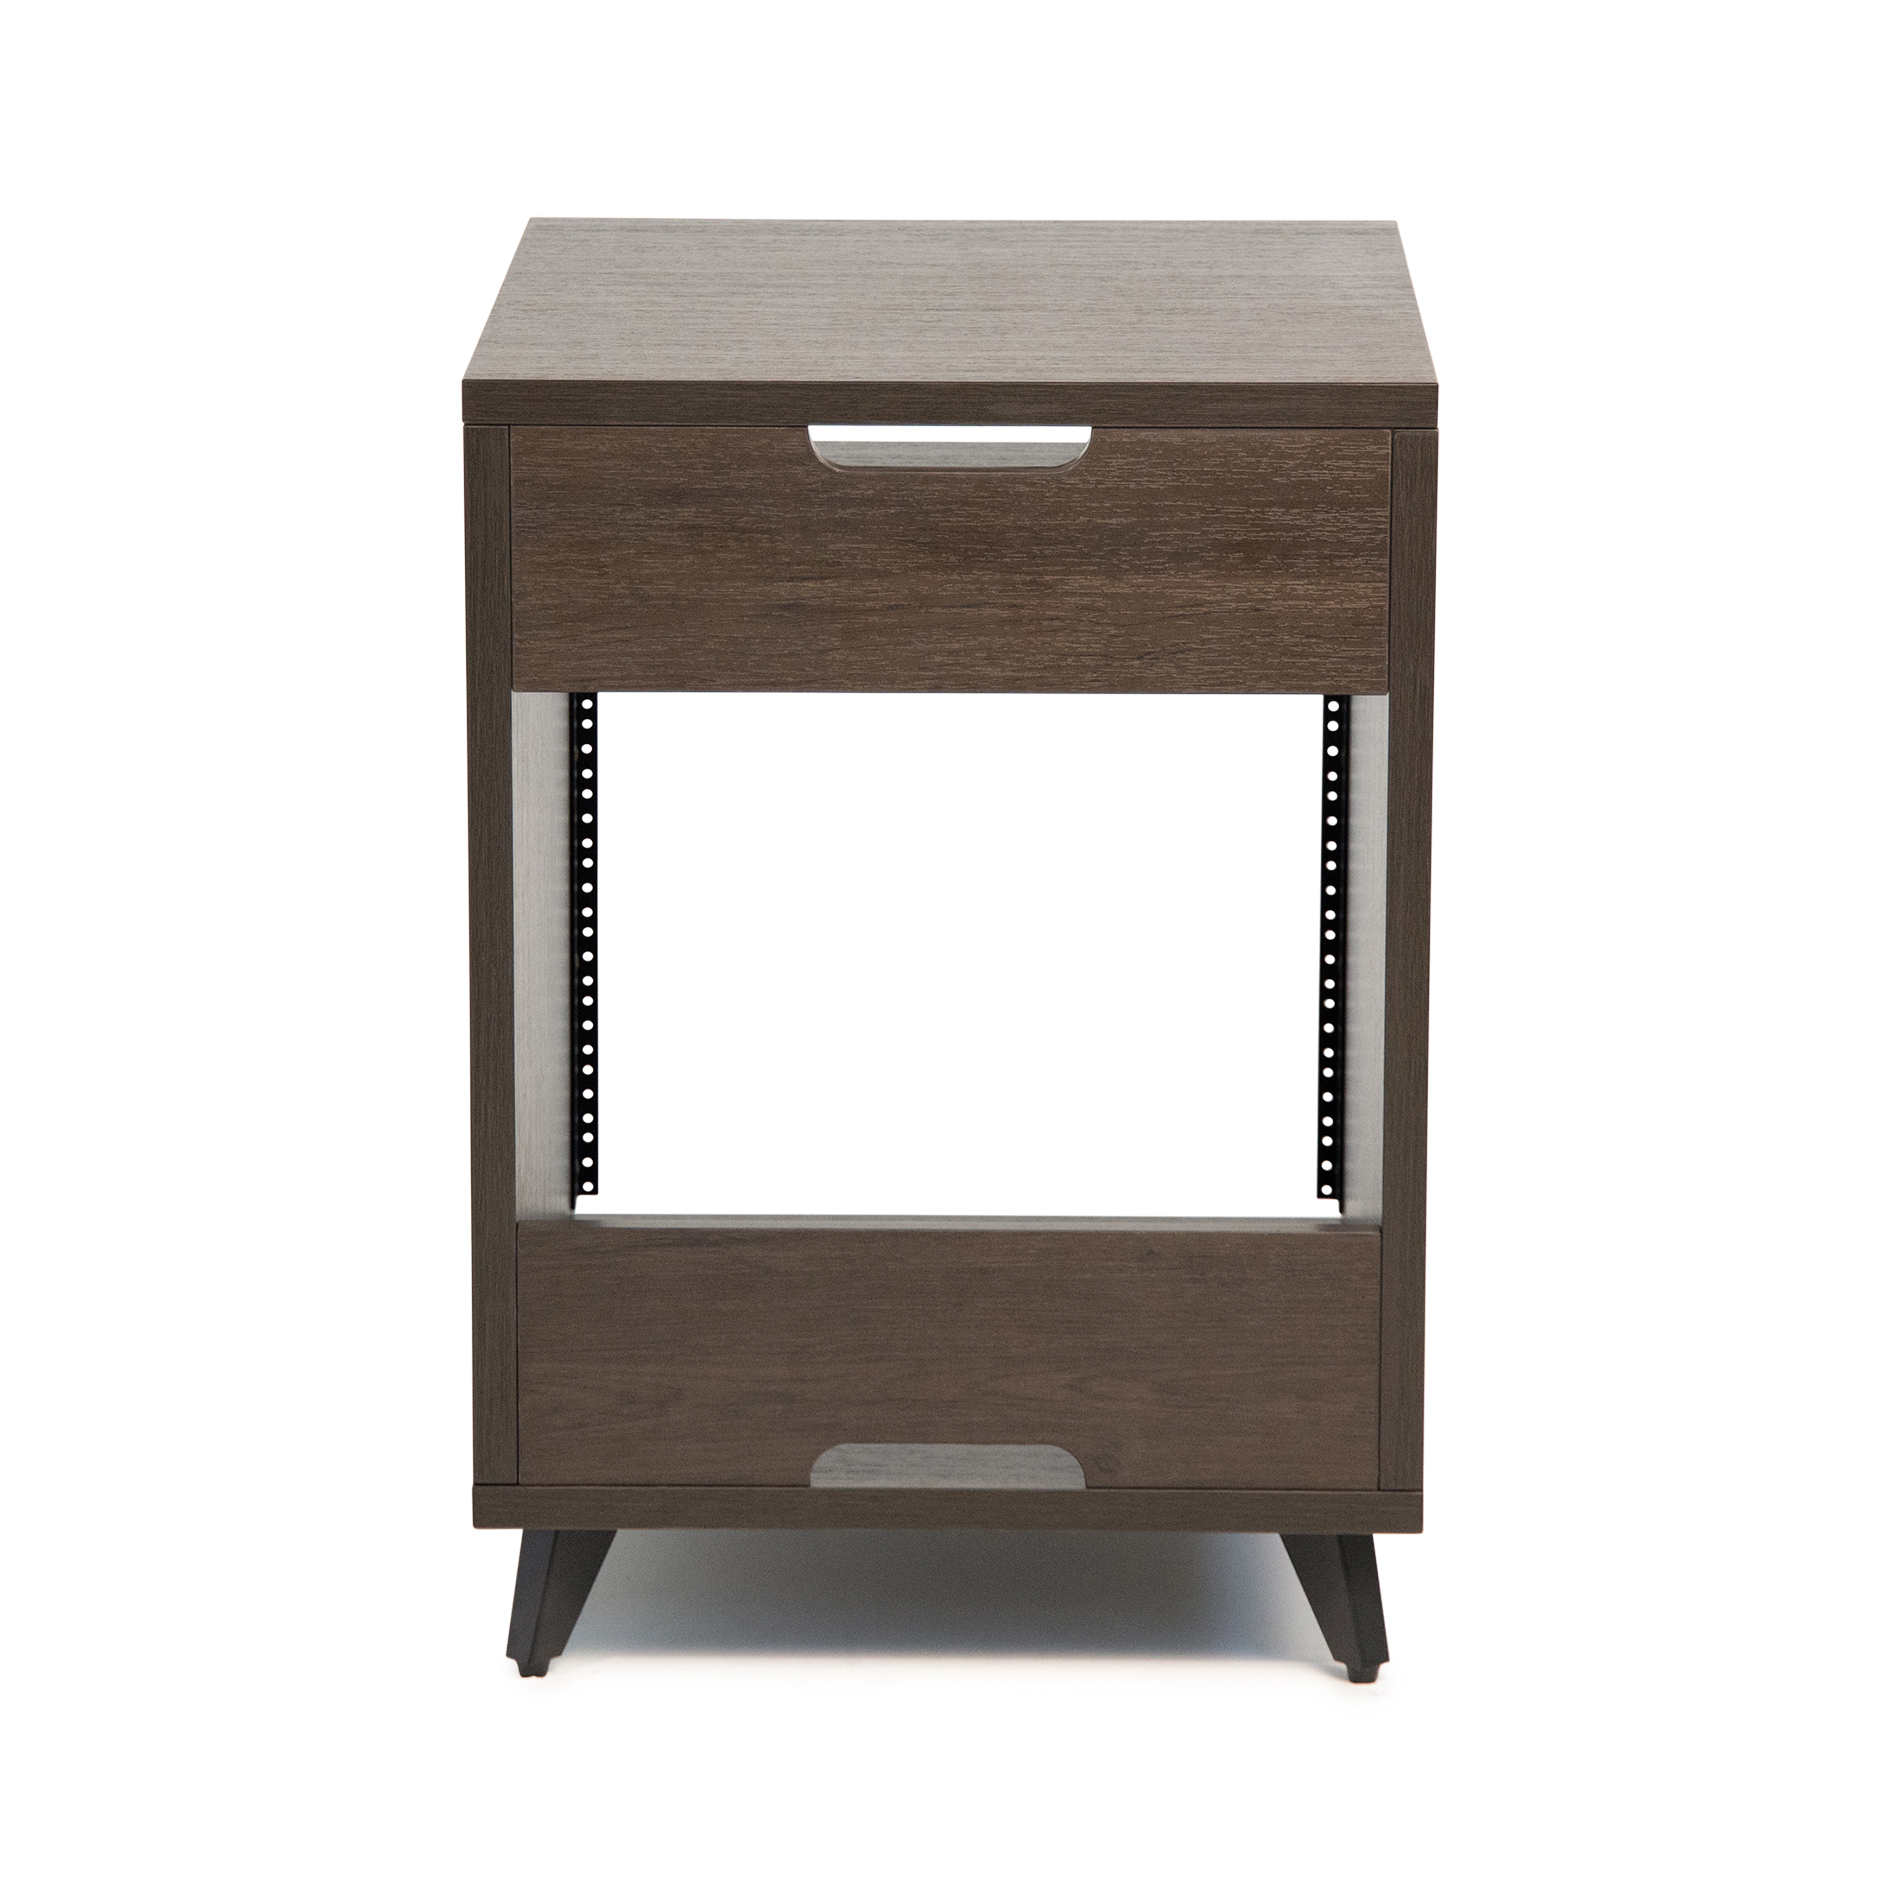 Elite Series Furniture Desk 10U Rack – BRN-GFW-ELITEDESKRK-BRN